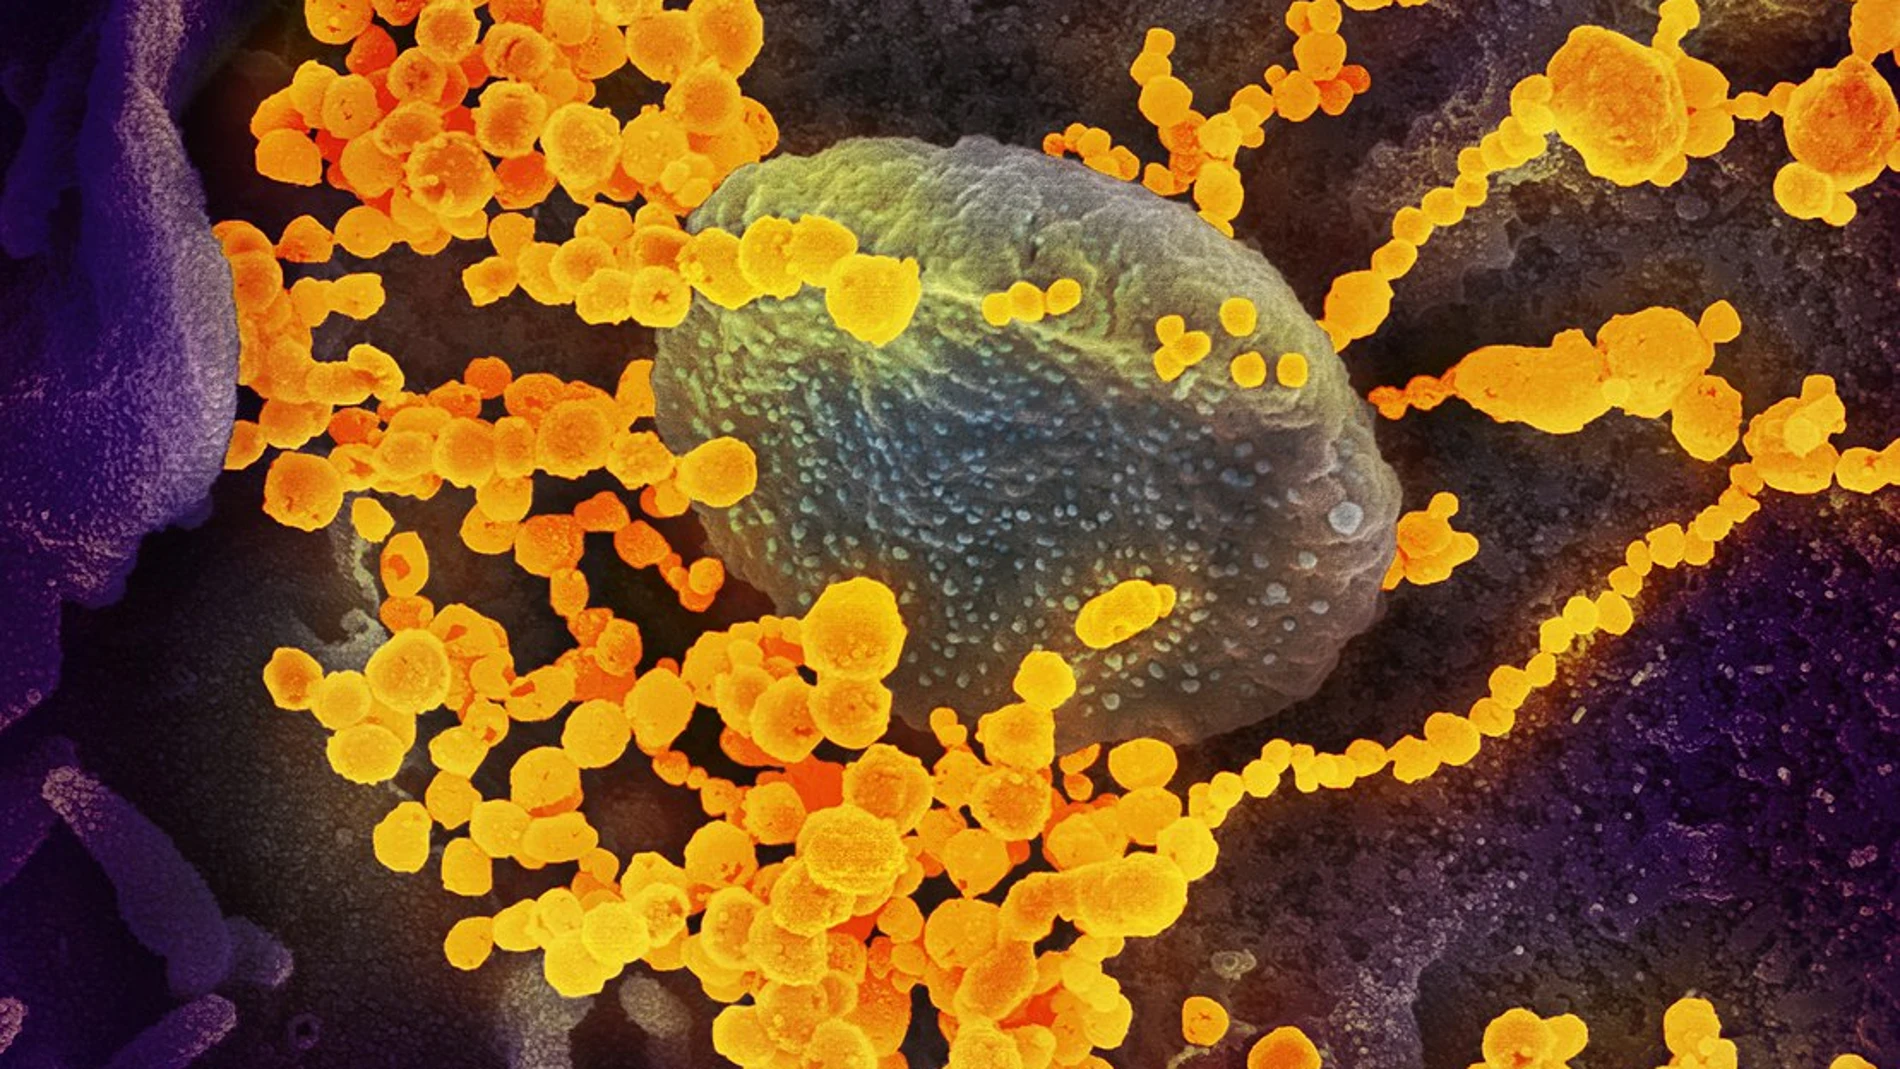 Imagen tomada por un microscopio electrónico de multitud de SARS-CoV-2 (dorado) emergiendo de una célula infectada. (Imagen coloreada artificialmente)